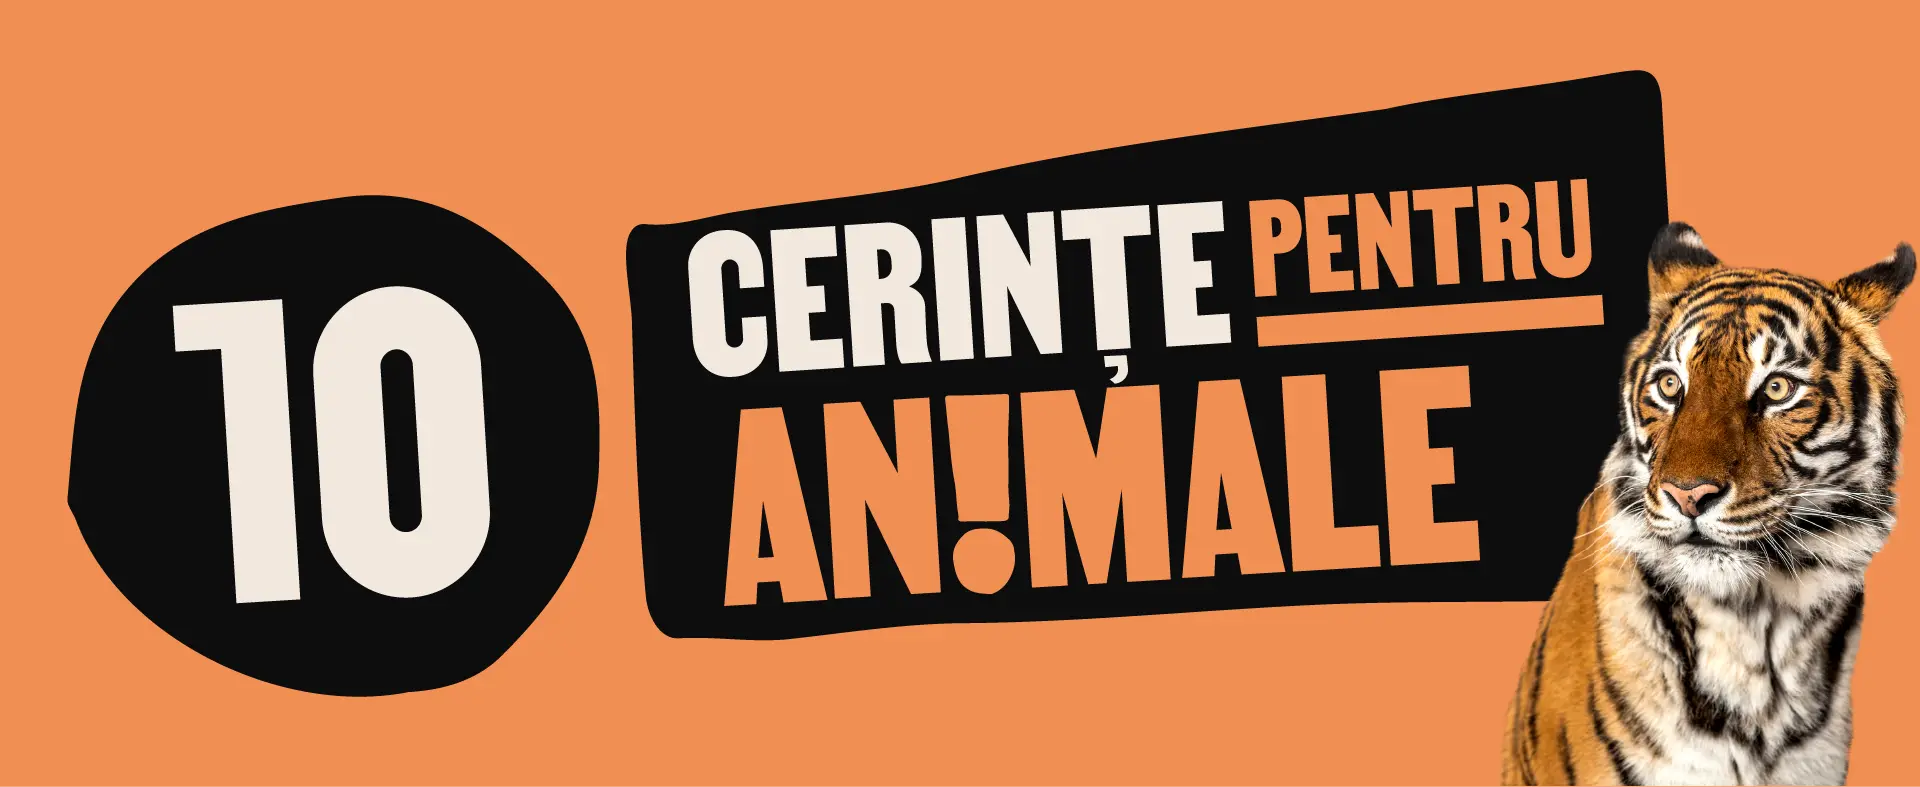 10 cerinte pentru animale